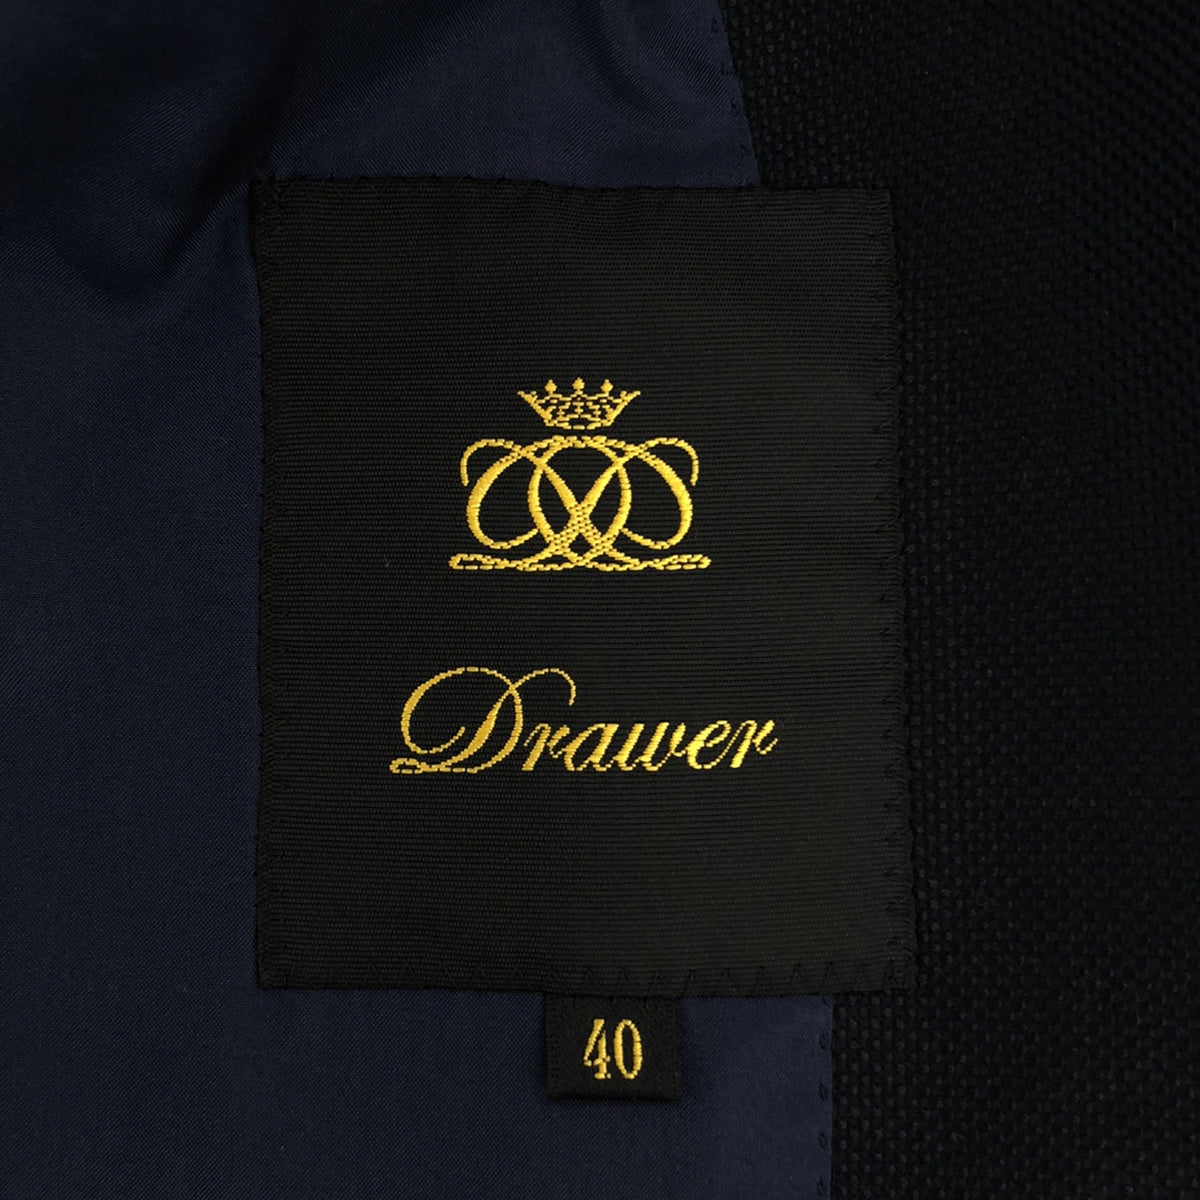 Drawer / ドゥロワー | シルク混 テーラードジャケット | 40 | レディース